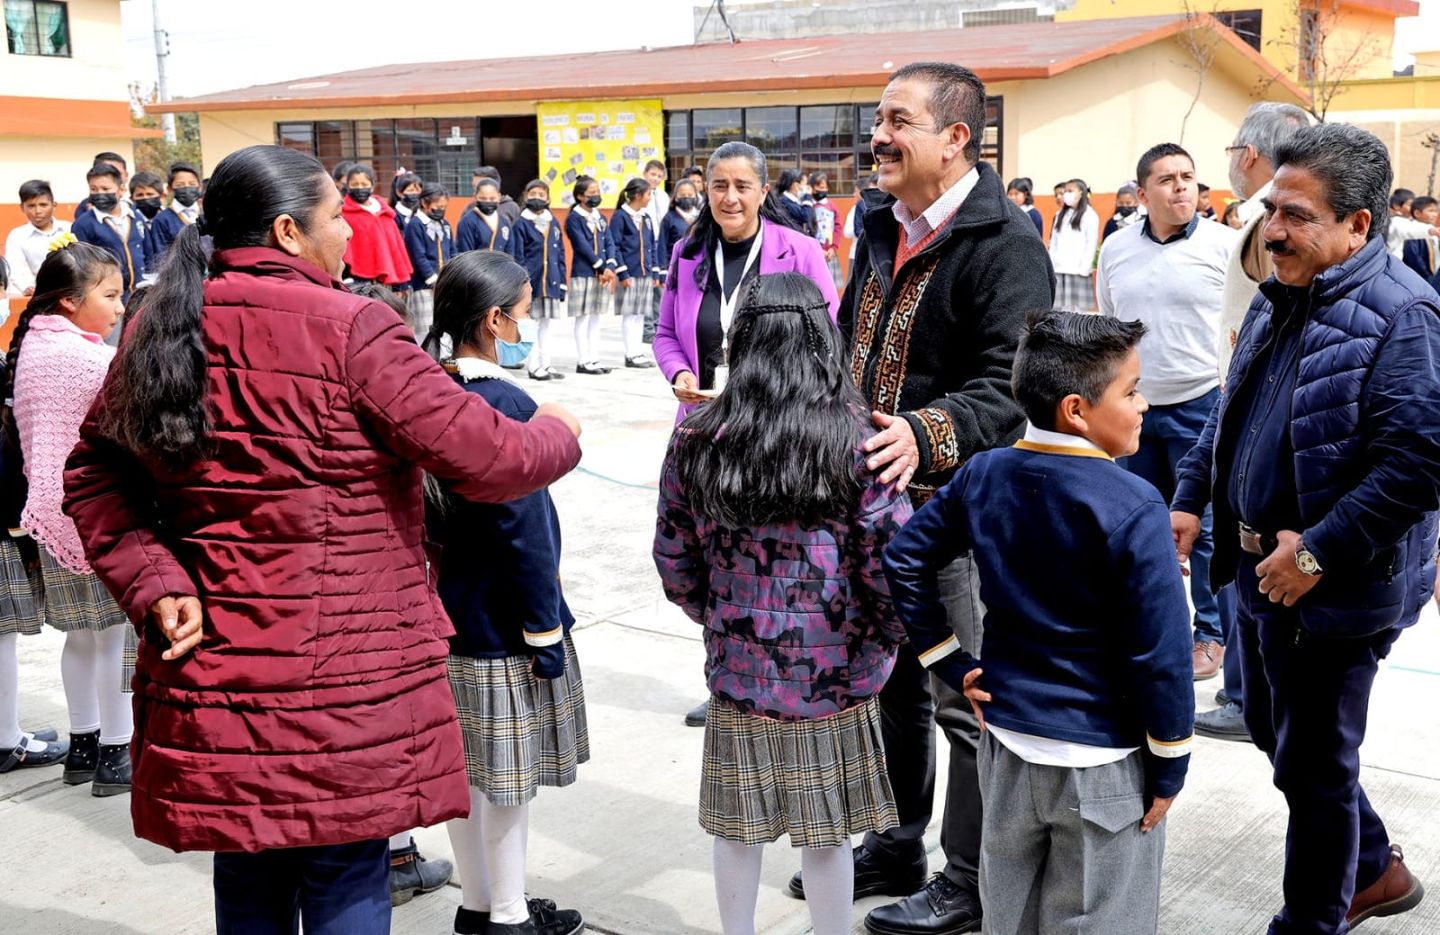 La Gobernadora Delfina Gómez Impulsa la Transformación Educativa y 
la Inclusión de los Pueblos Originarios: Miguel Angel Hernández Espejel